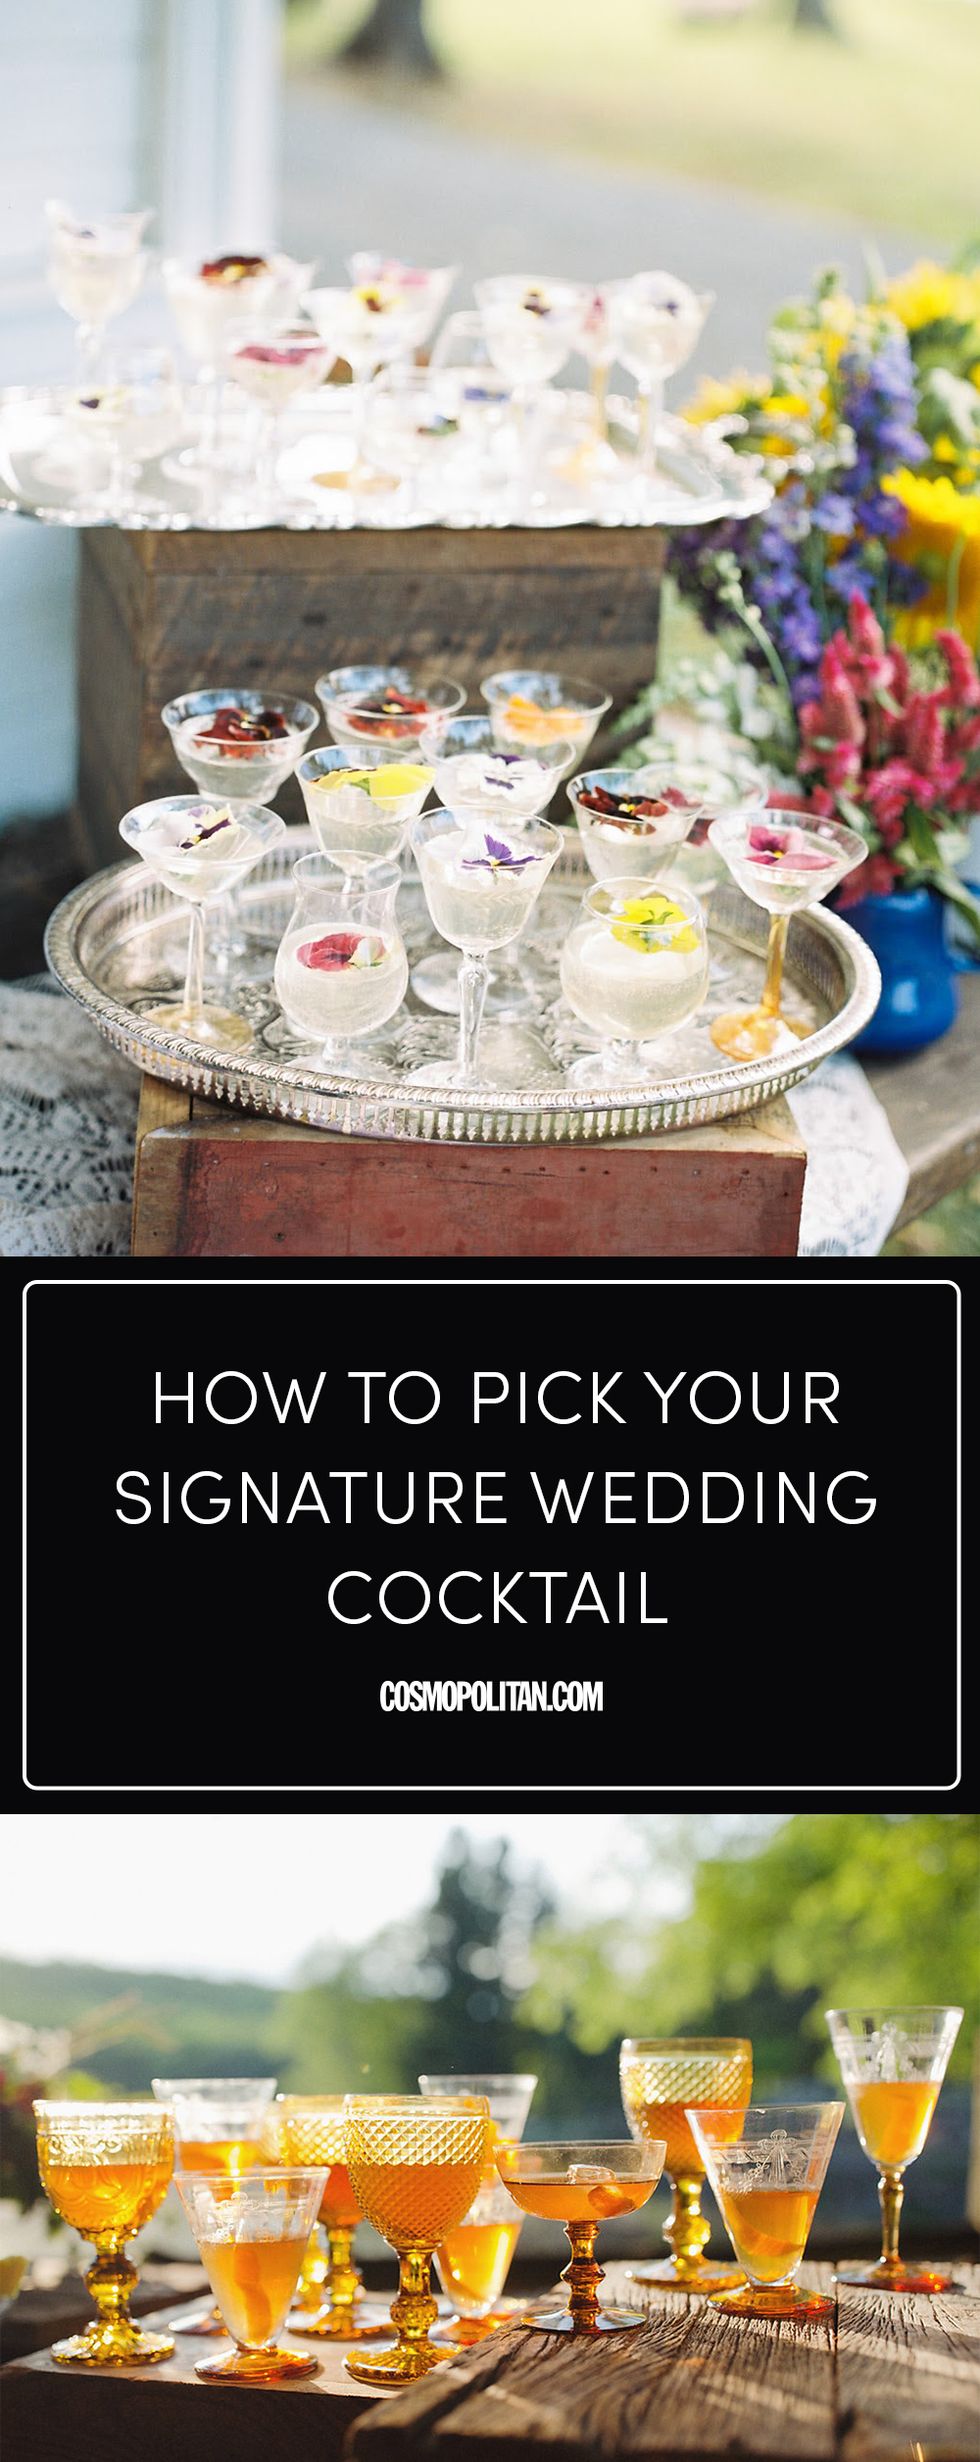 Wedding Cocktail Garnishes